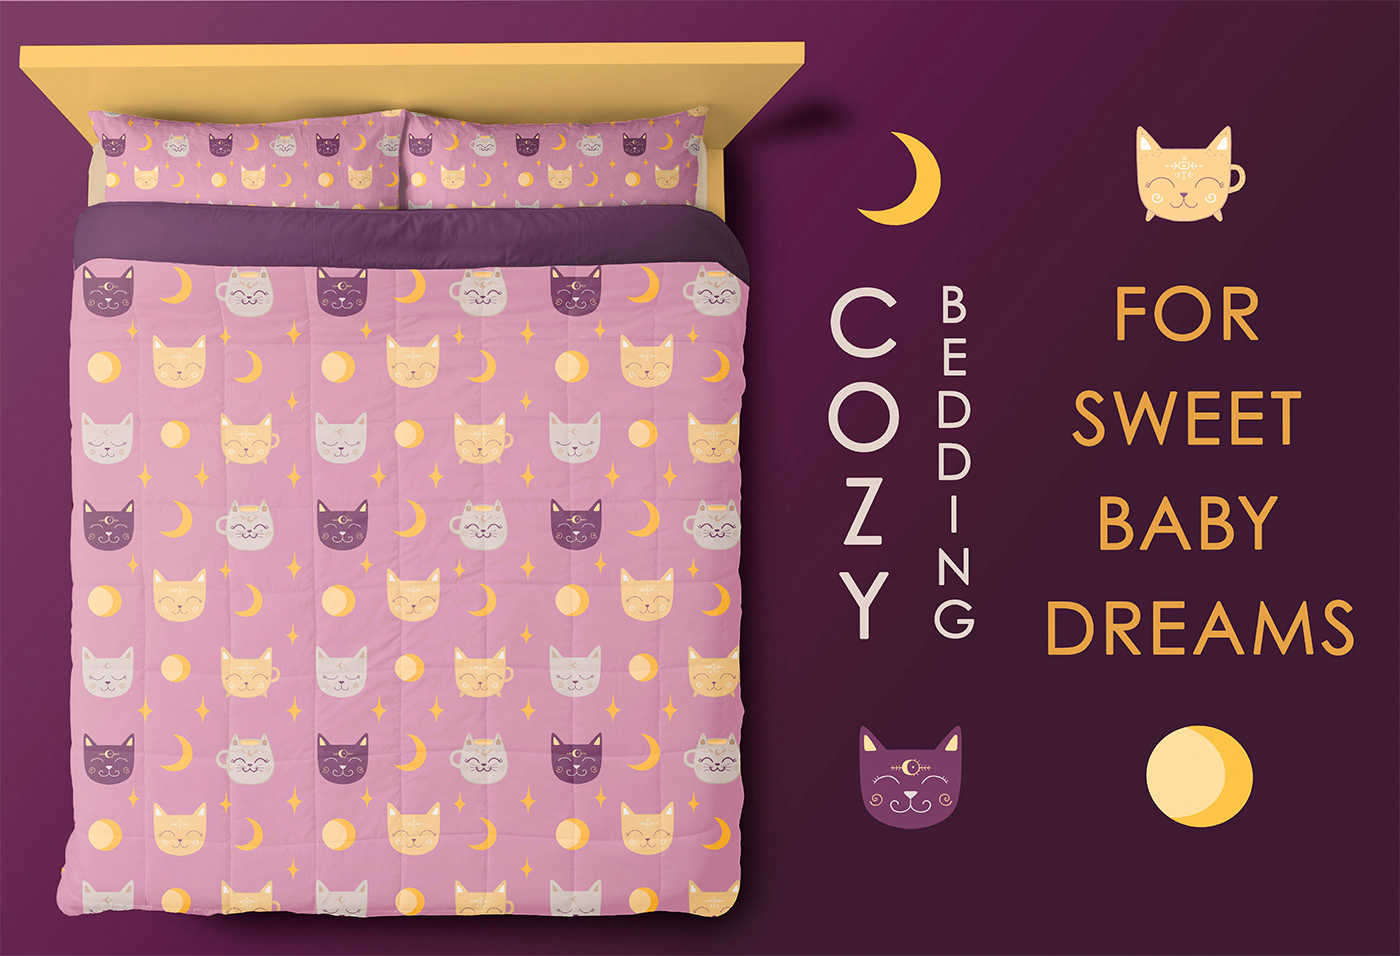 bedding design постельное белье  кошка Cat магия Magic   digital illustration art BEDDING COLLECTION